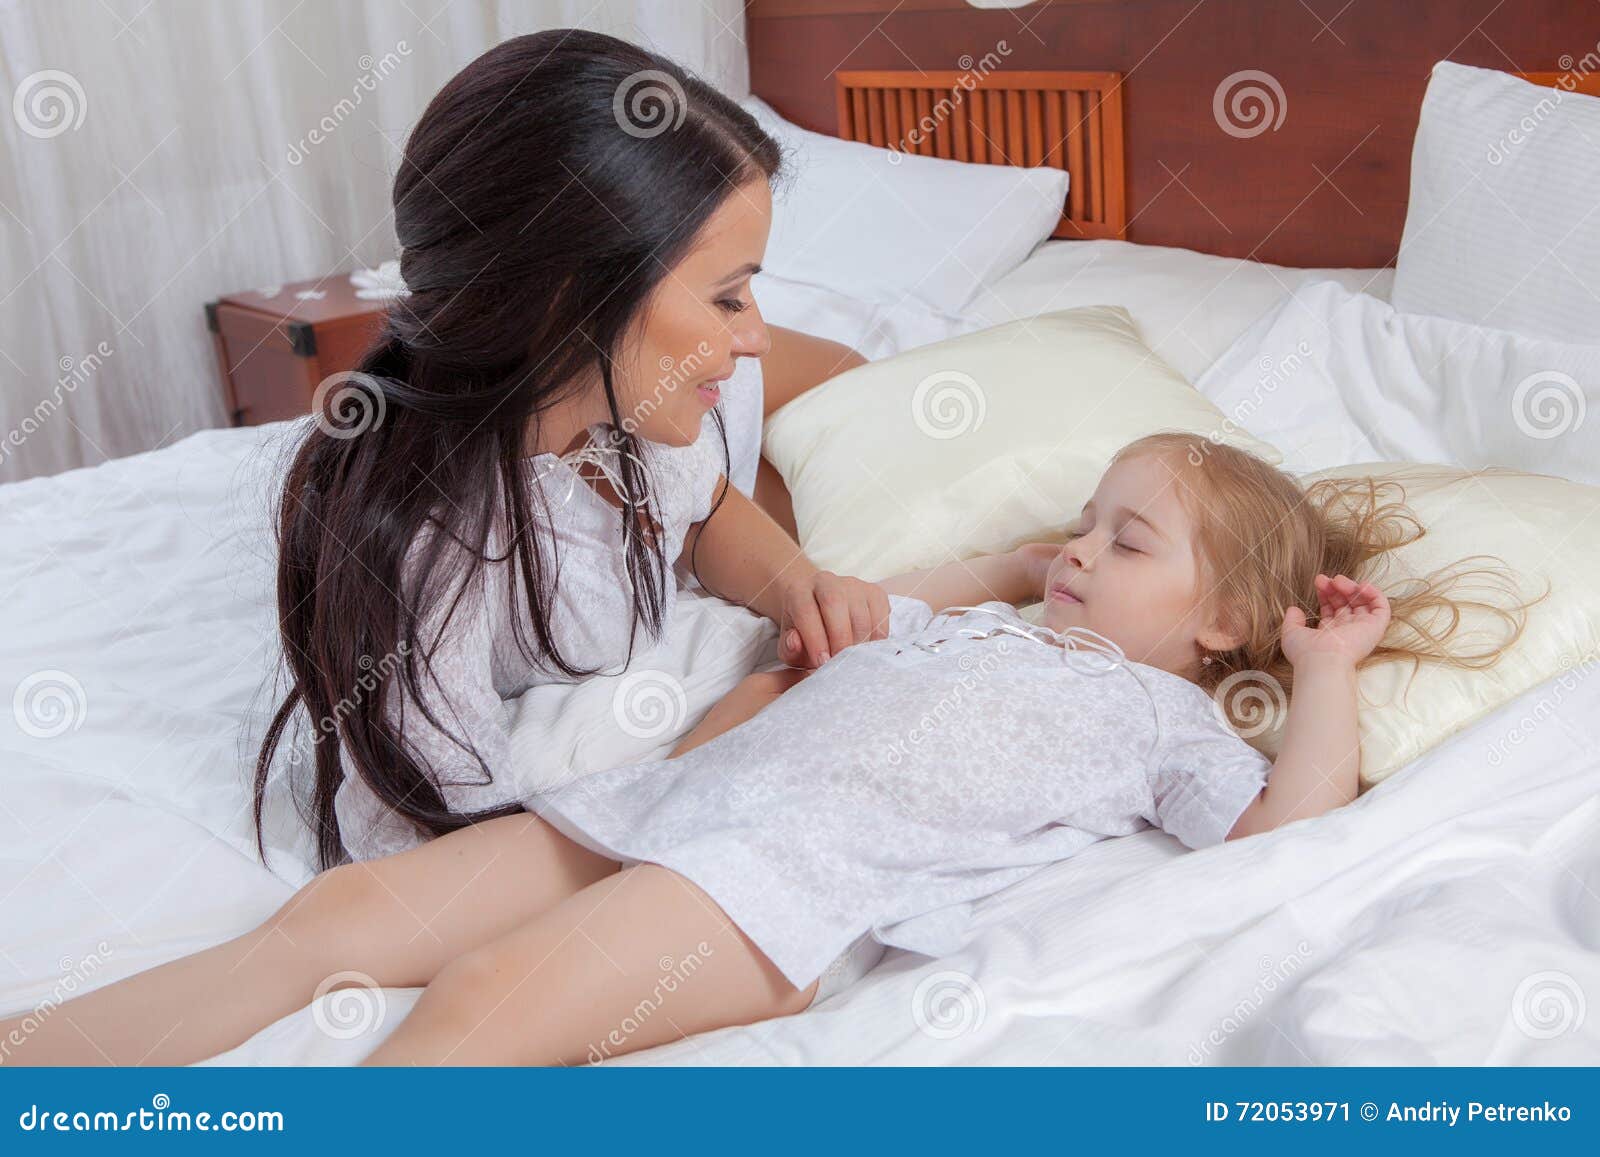 Ласкает спящую дочь. Мама с дочкой на кровати. Мамас дочкой накрлвати. Фотосессия с дочкой на кровати. Девочка и мама в постели -.